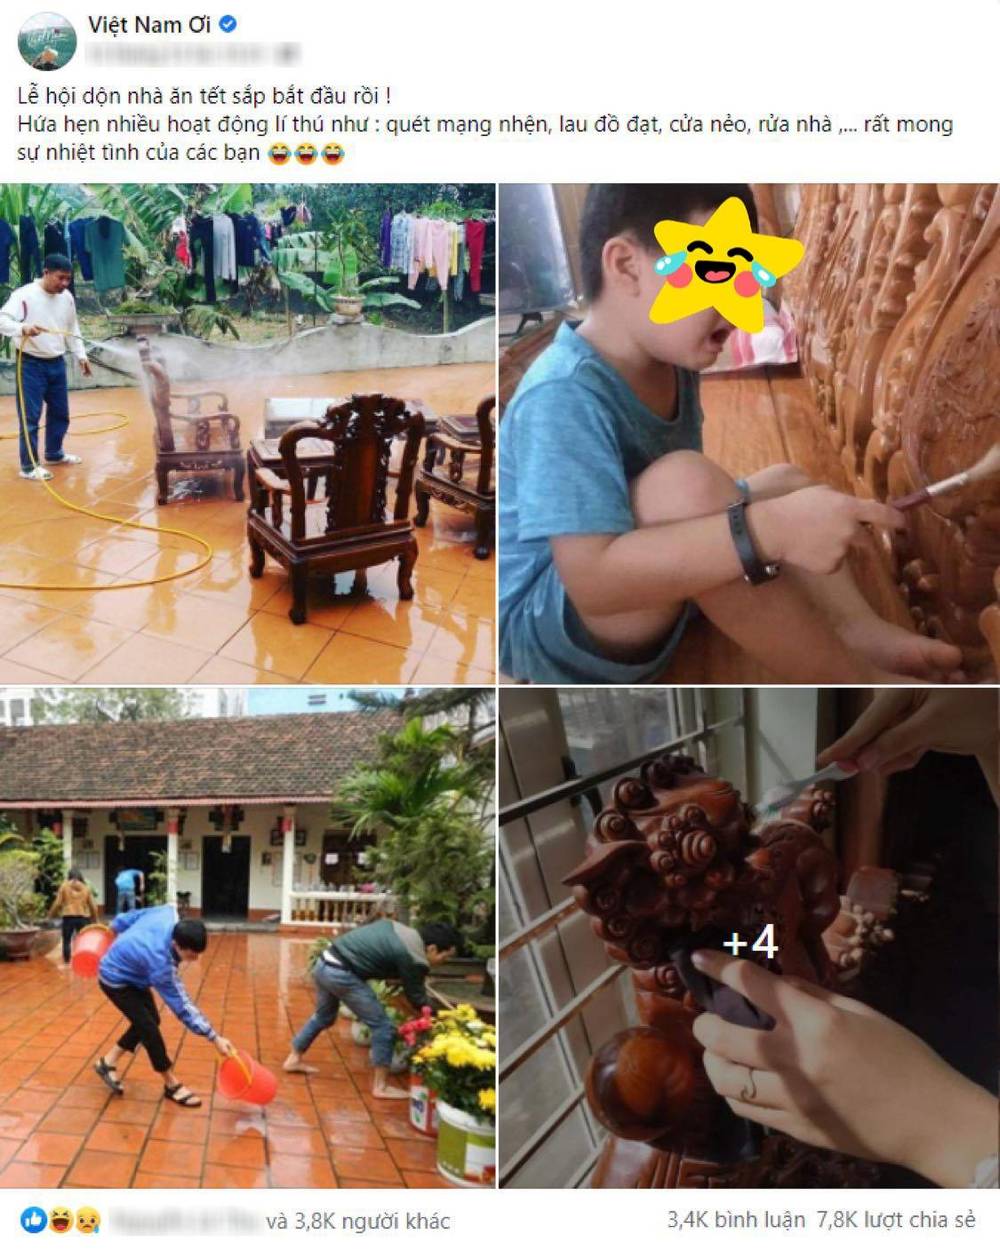  
Bài đăng về "lễ hội dọn nhà" thu hút hàng ngàn bình luận của cộng đồng mạng. (Ảnh chụp màn hình nhóm Việt Nam Ơi)